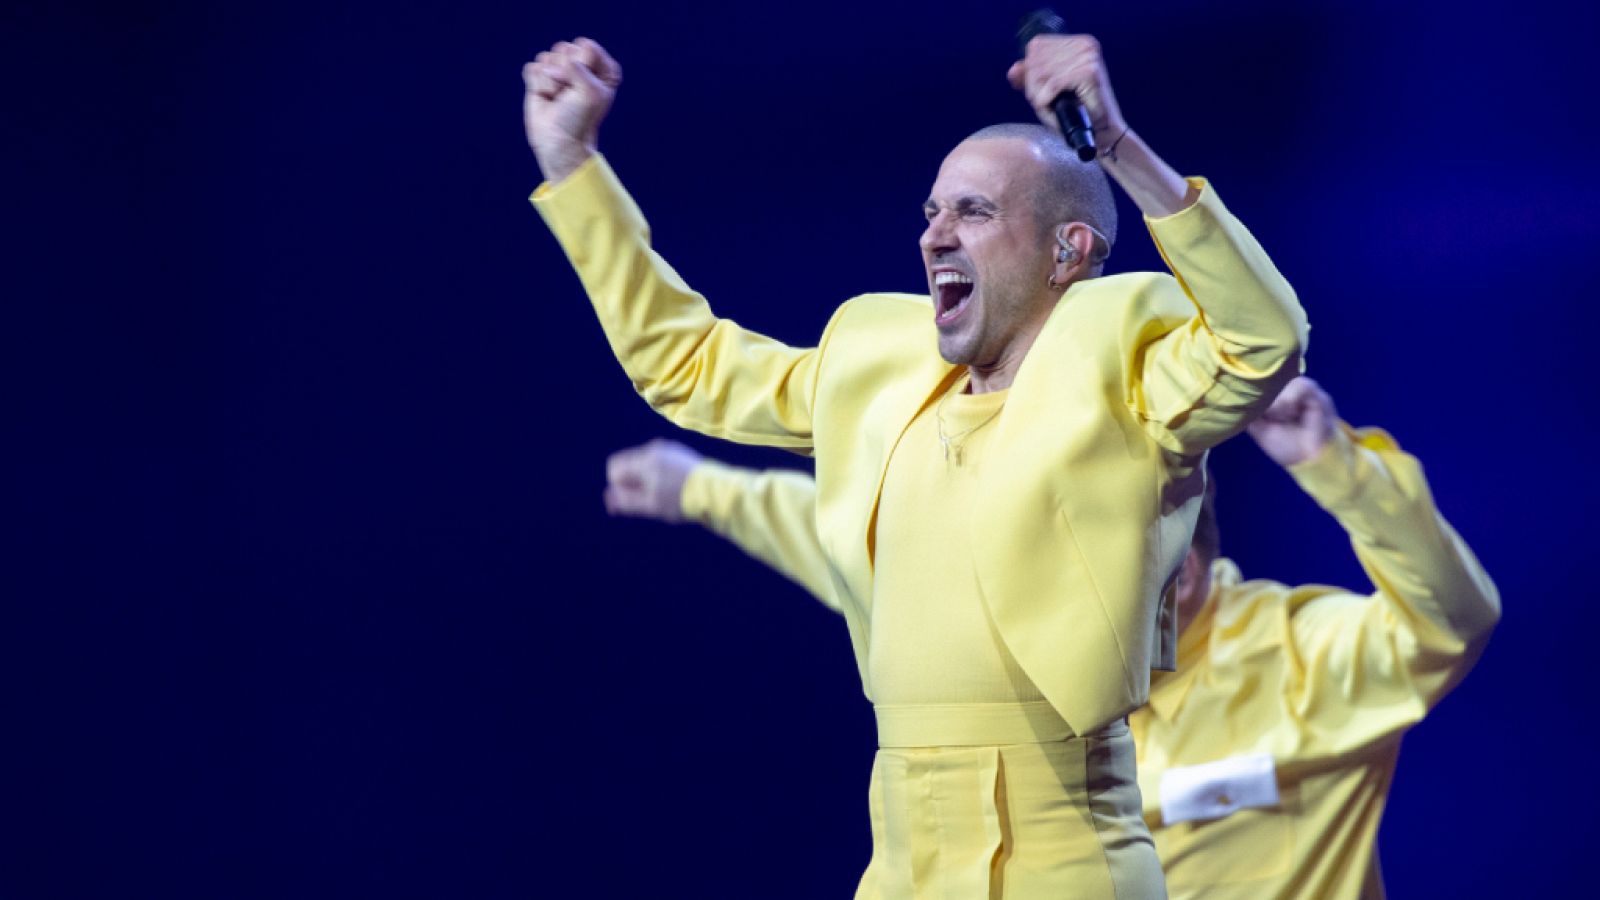 Eurovisión 2021 - Lituania: The Roop canta "Discoteque"